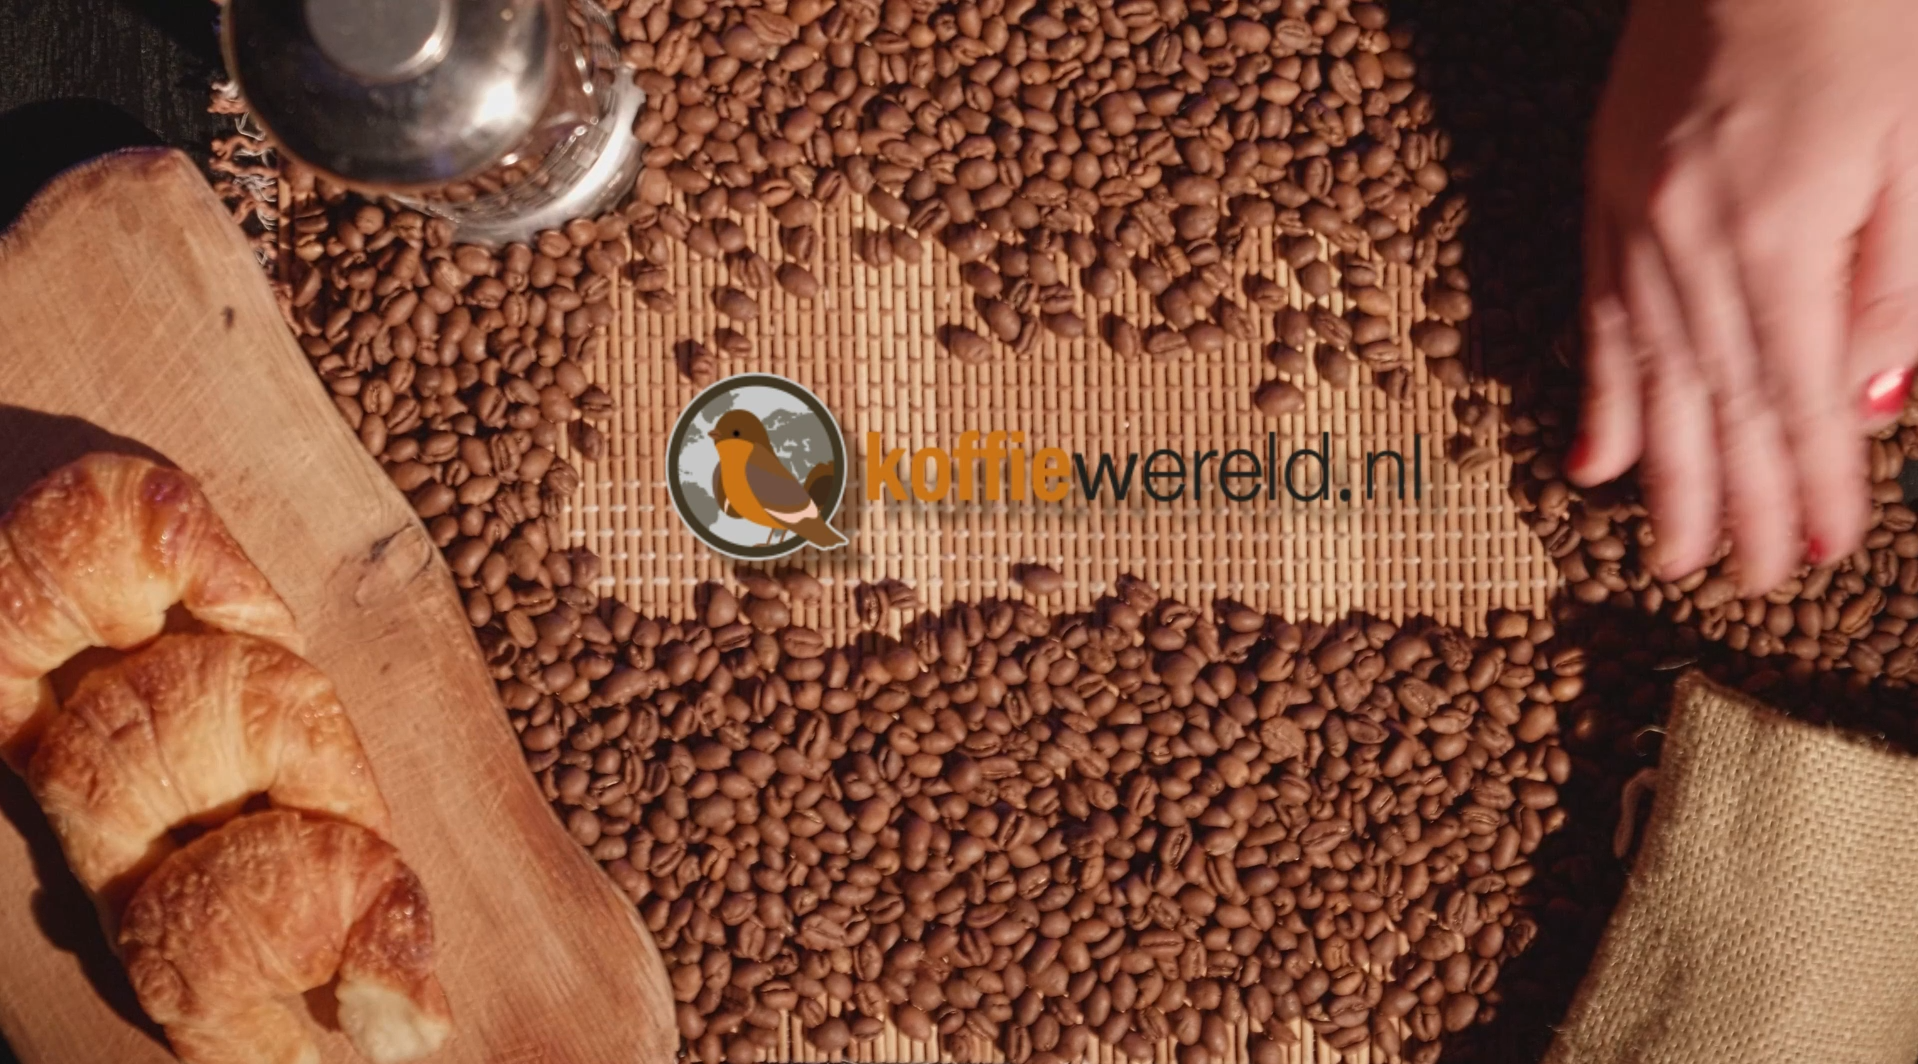 Koffiewereld.nl logo met bonen